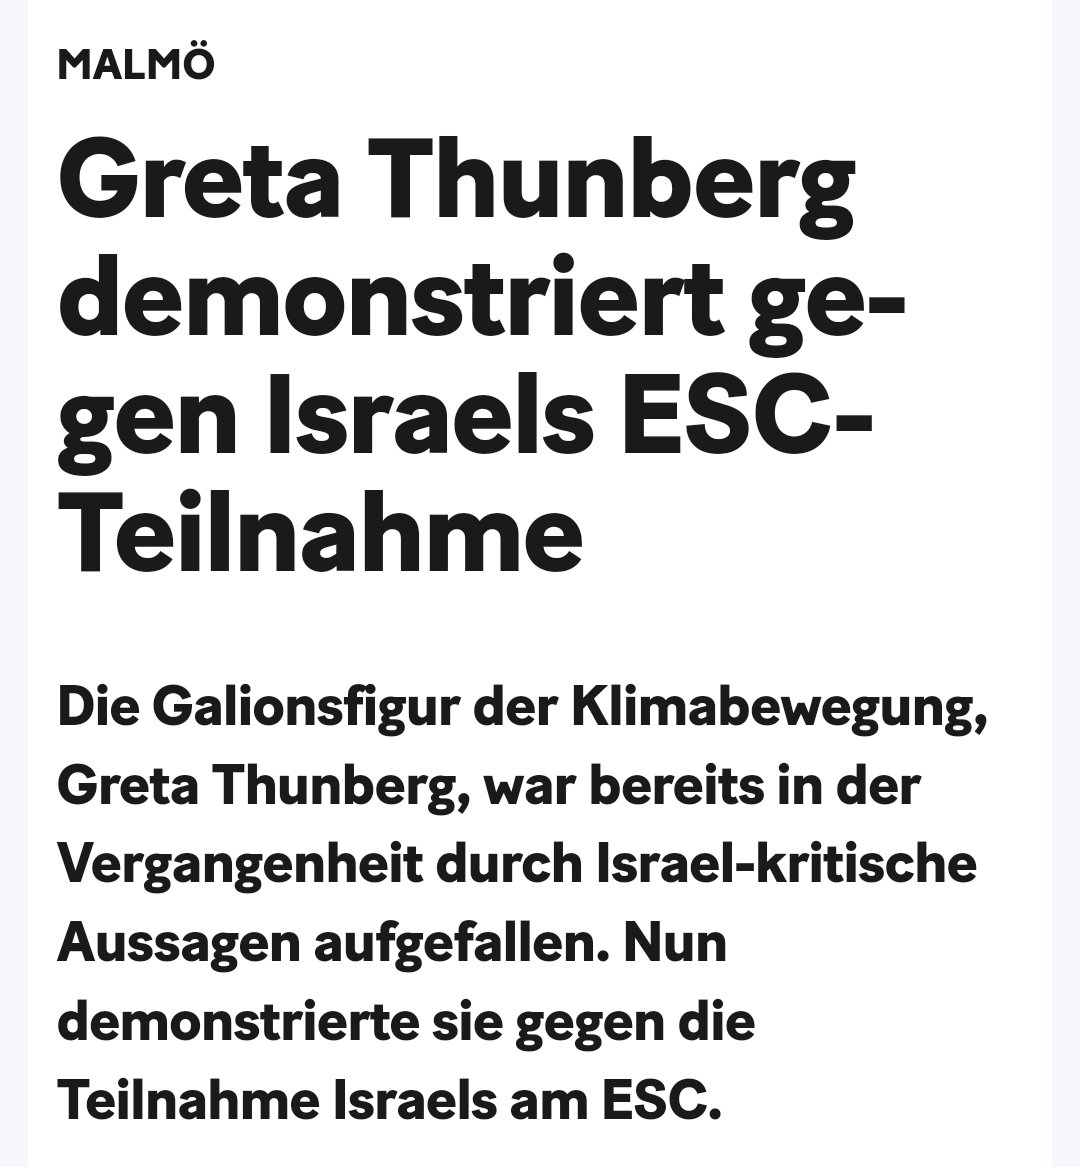 How dare you? Wie sich die #Klima-'Heldin' #GretaThunberg und die ganze Bewegung als linksextreme Bande demaskiert. #Greta, mir graut vor ... euch! #ESC24 #Israel #Klimasekte 20min.ch/story/malmoe-g…